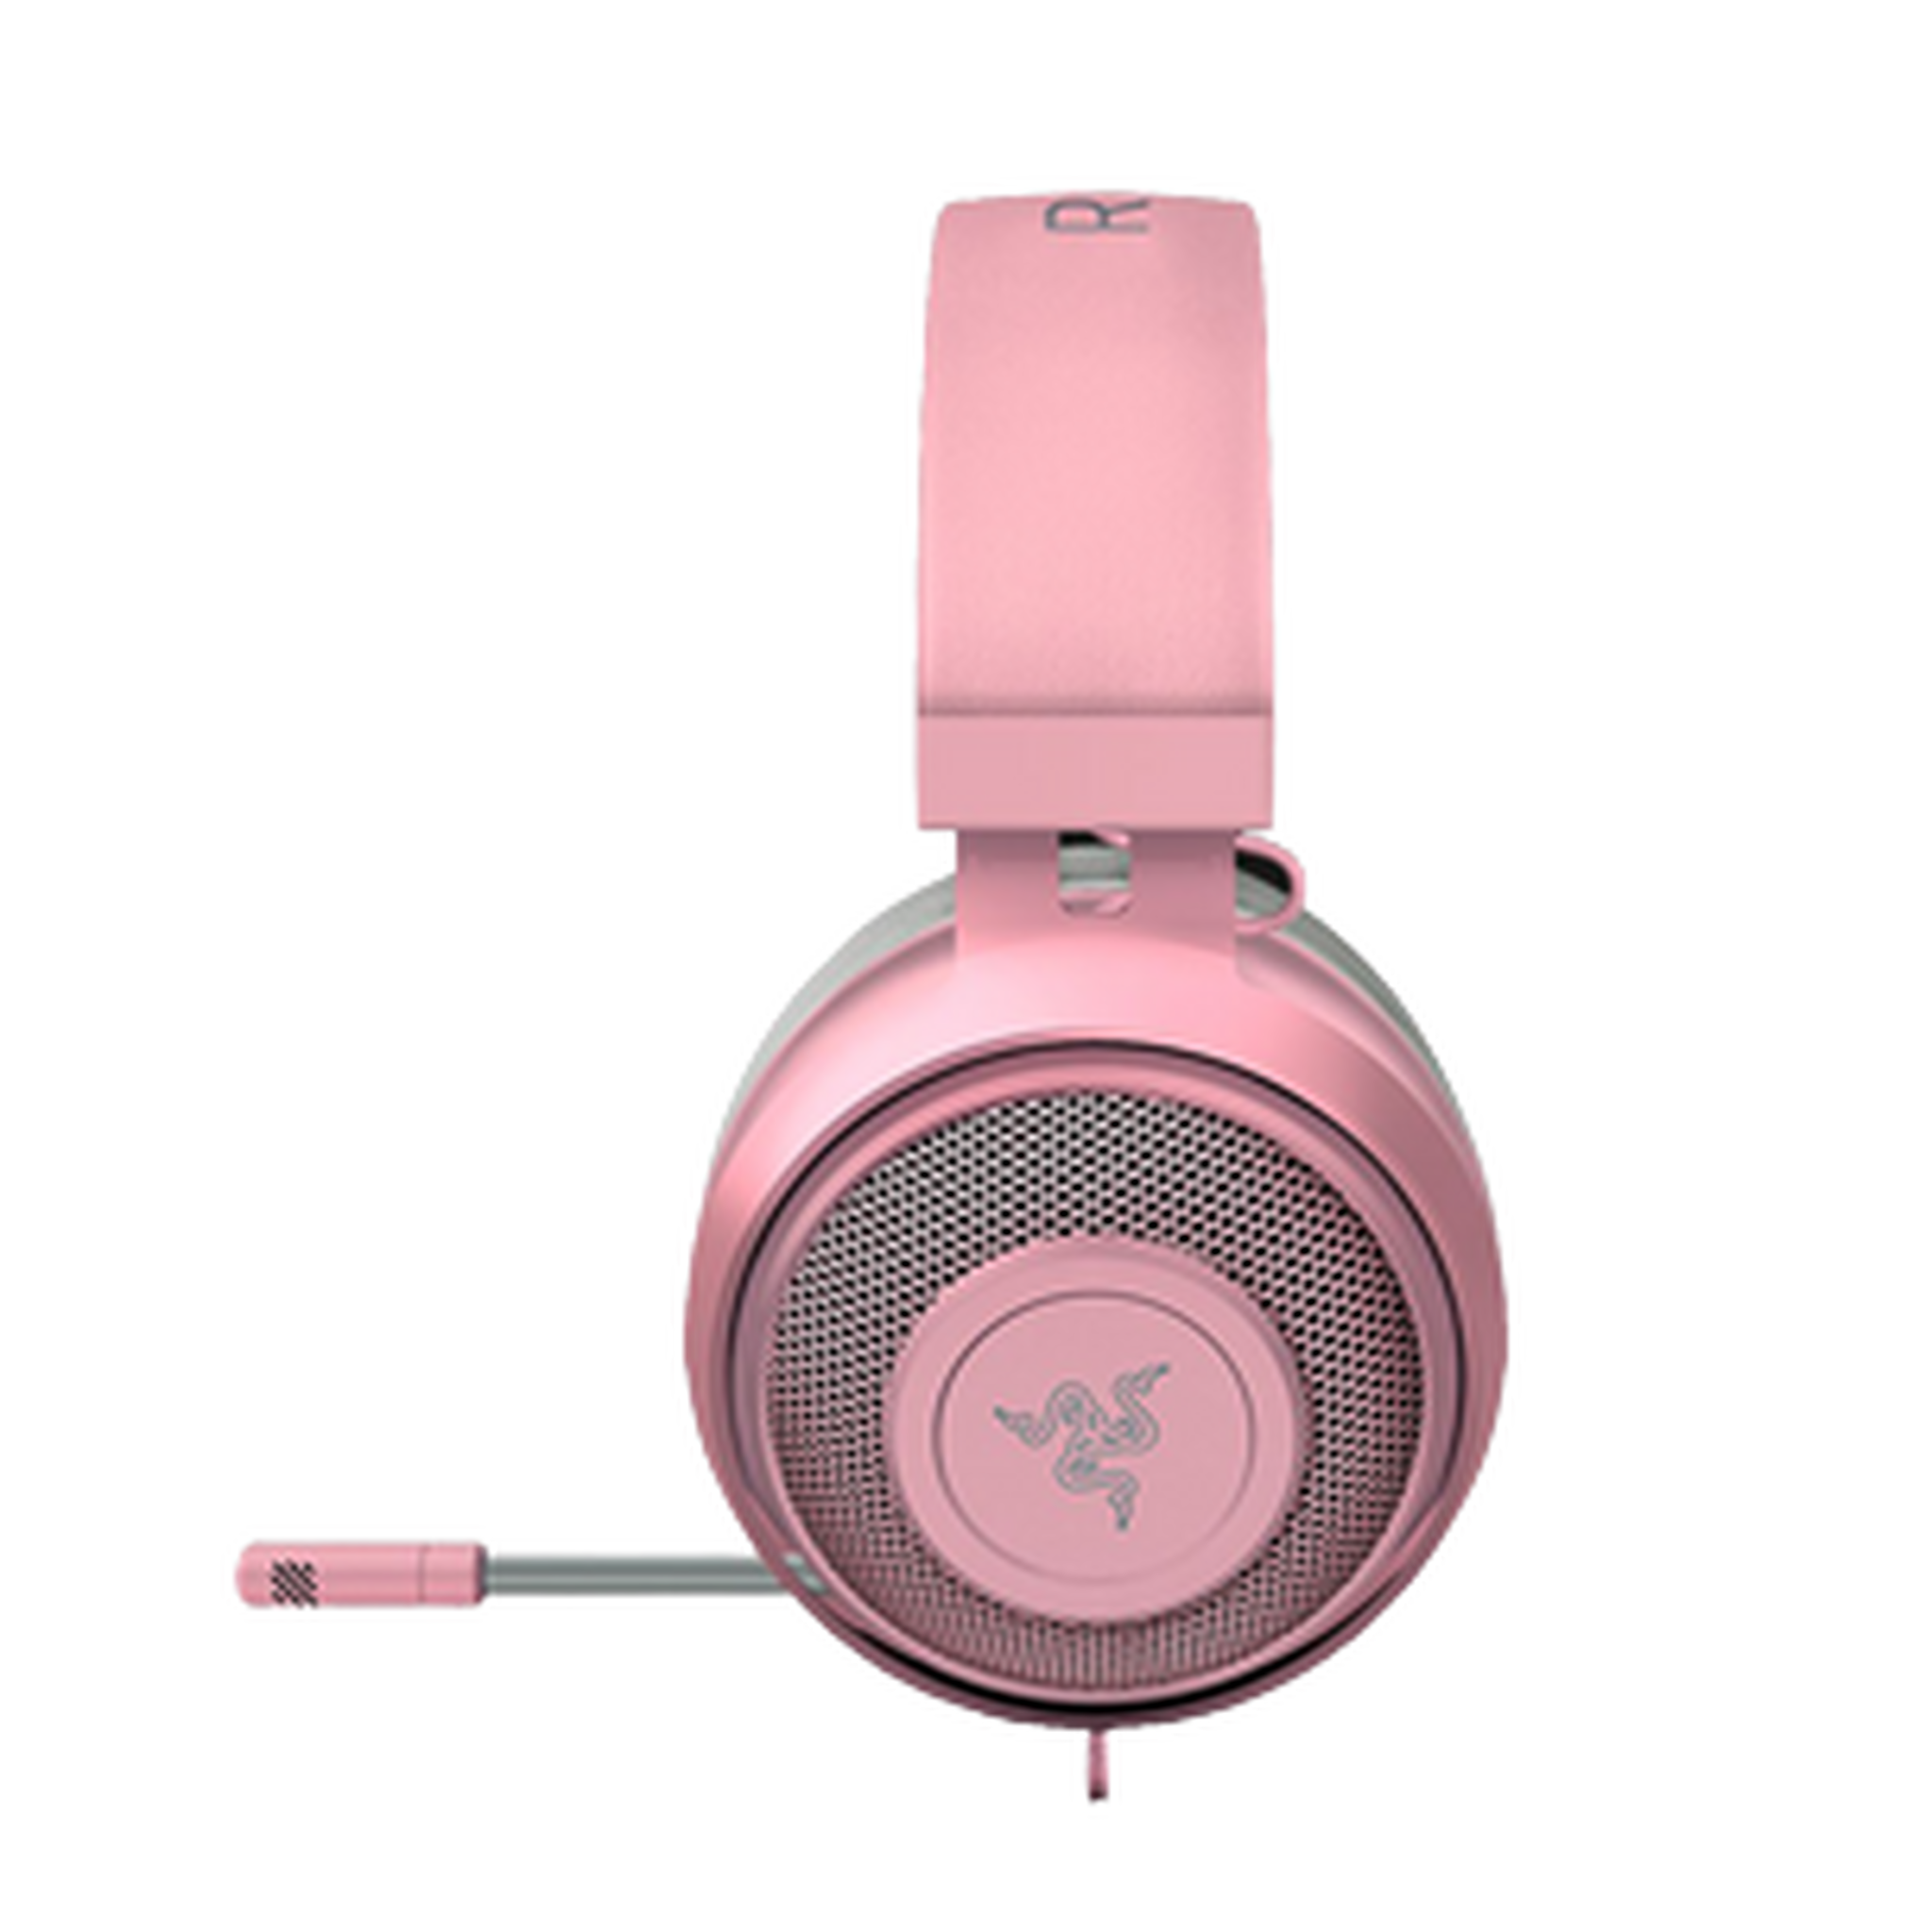 Razer Kraken Wired Headset Quartz Edition - Pink